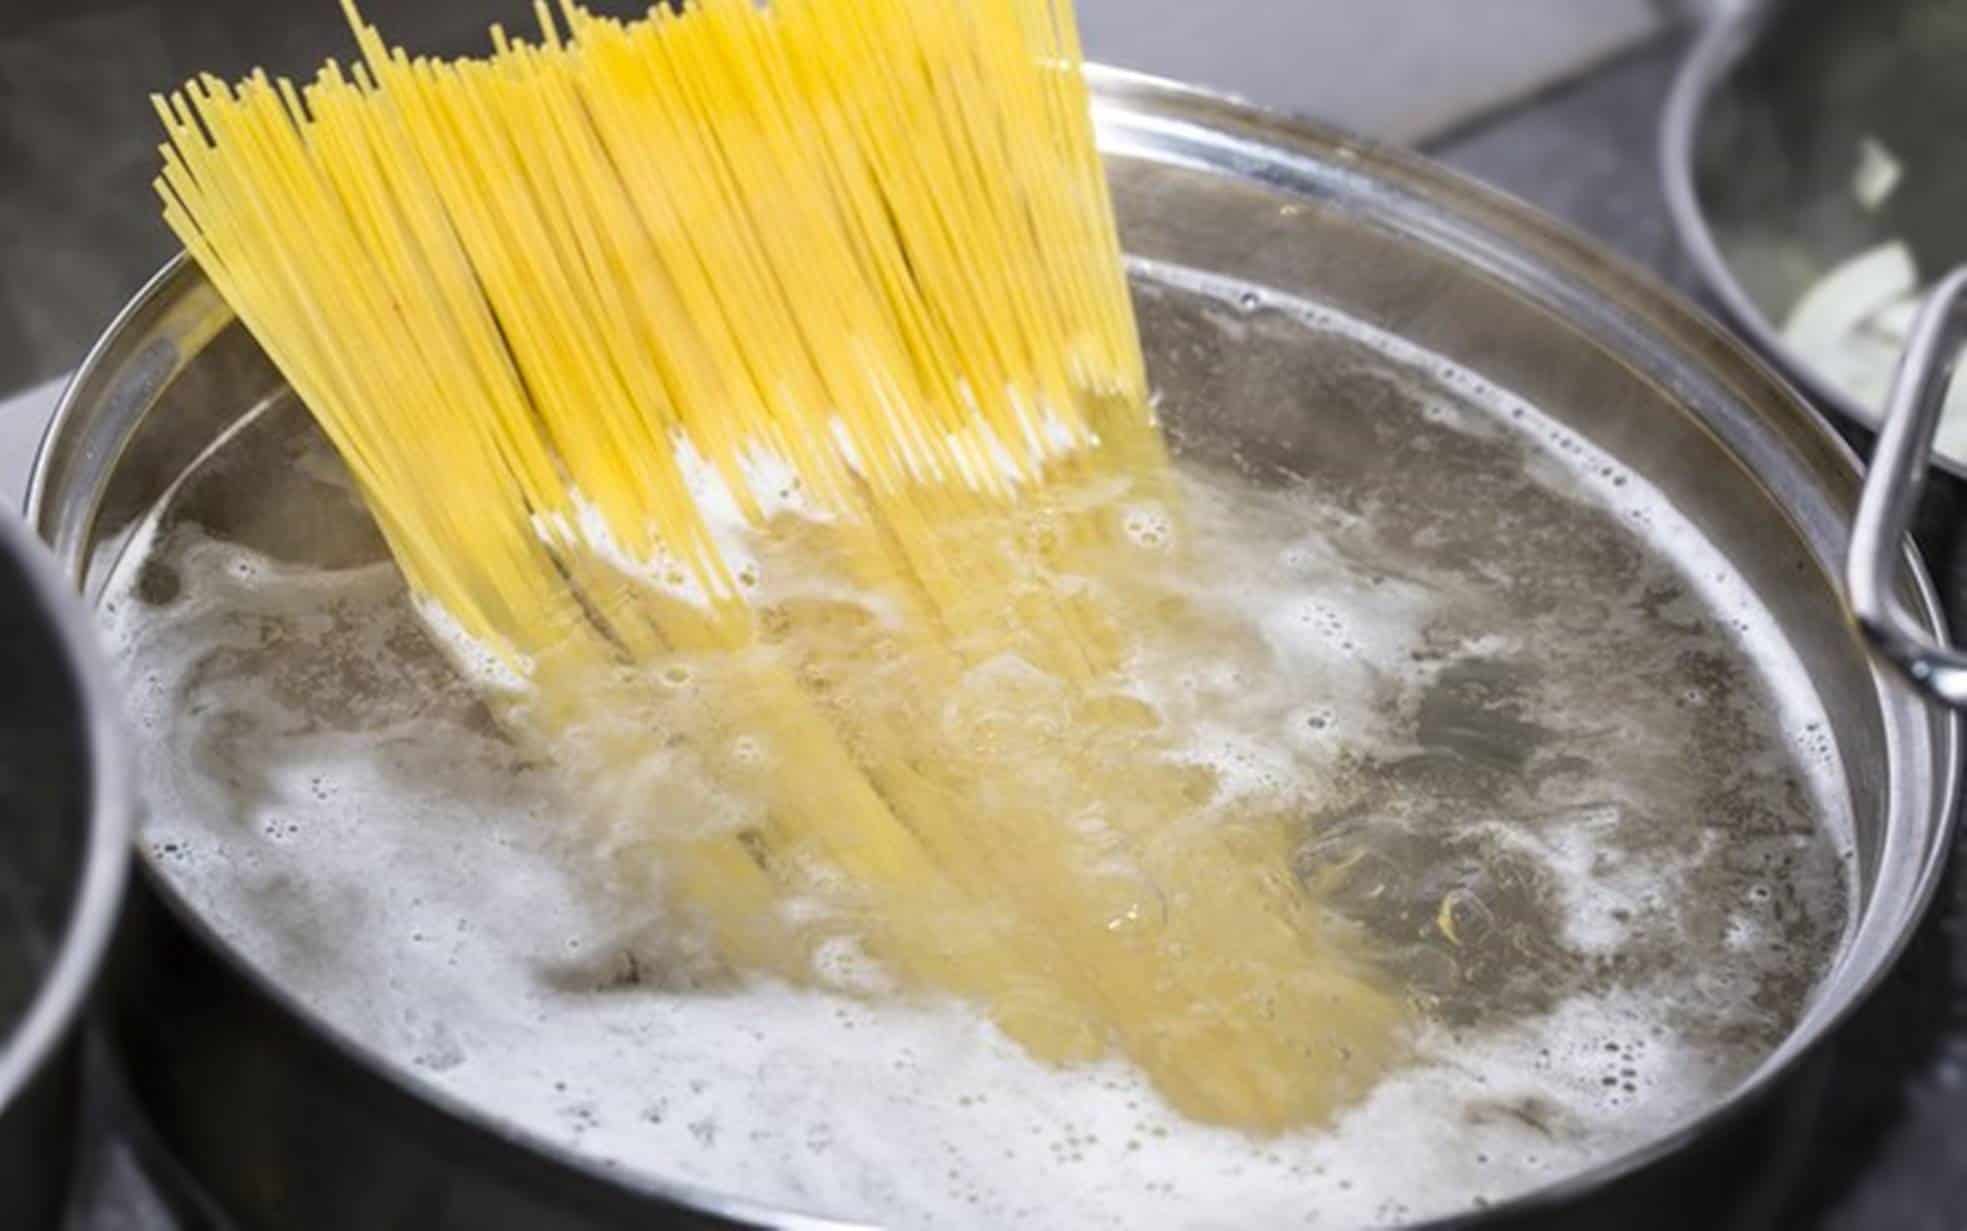 Aprenda a cozinhar macarrão em 1 minuto com este método inovador